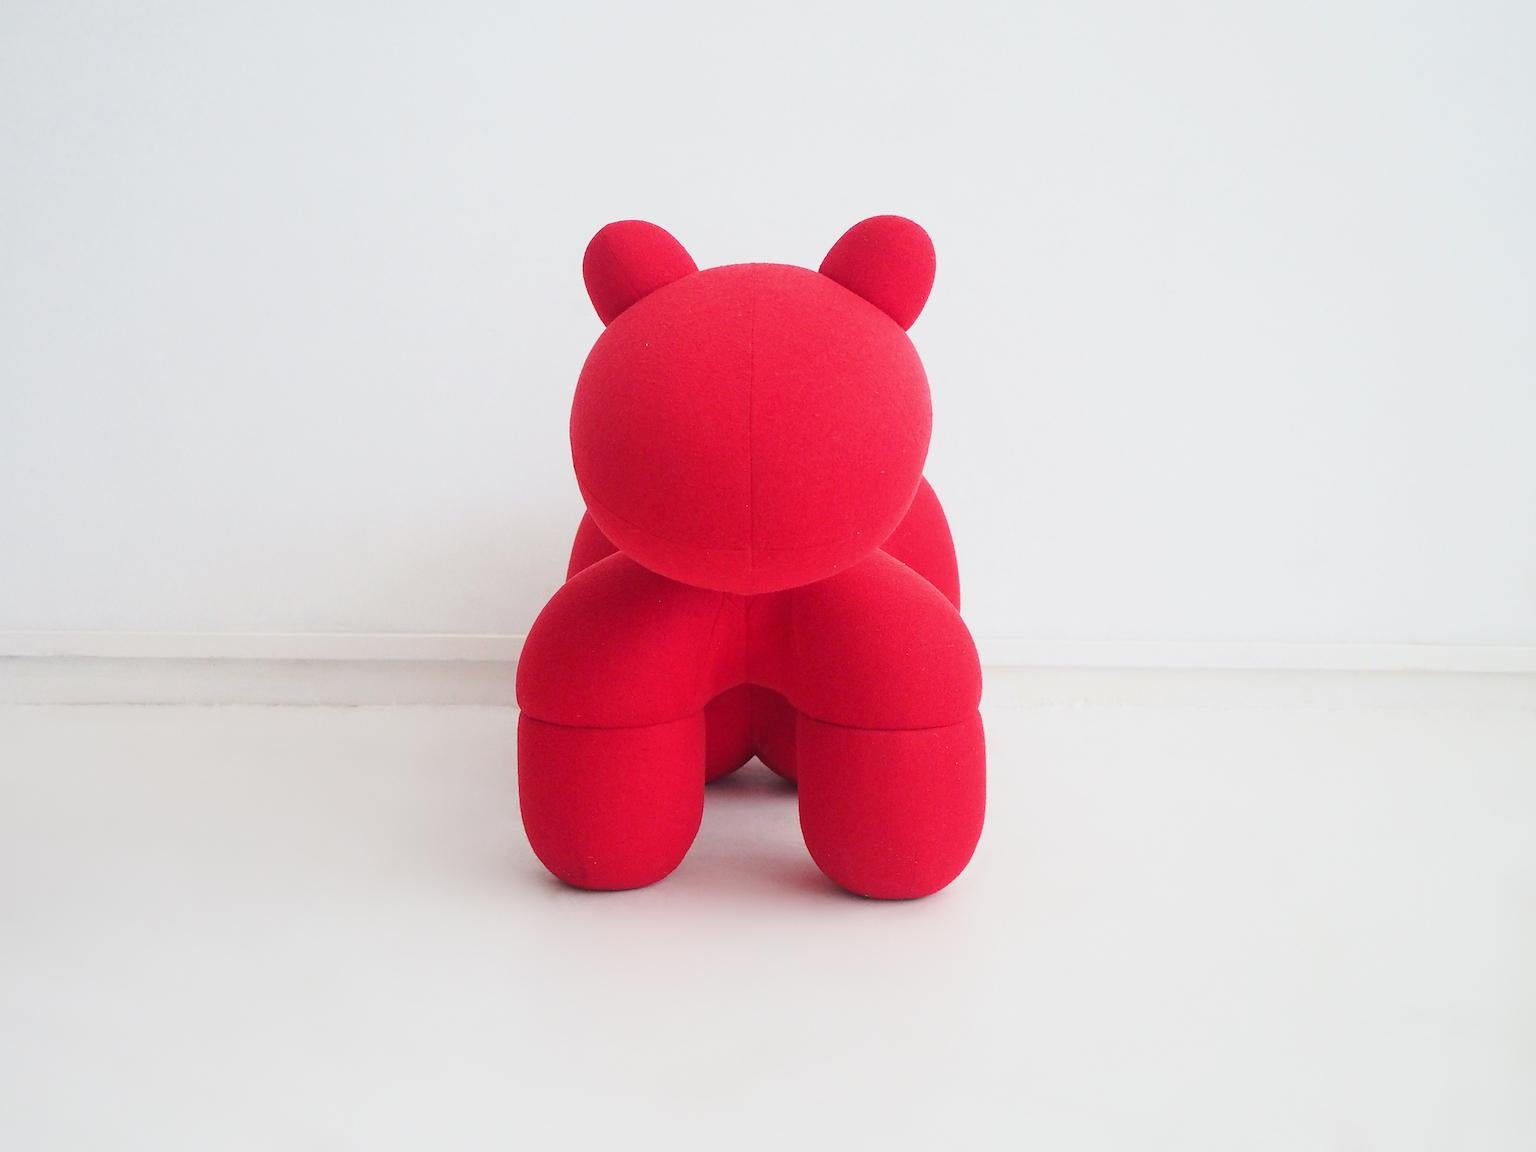 Fauteuil poney recouvert d'un tissu rouge. Ce siège emblématique a été conçu à l'origine par le designer finlandais Eero Aarnio en 1972. Il est doté d'un cadre en métal et d'un rembourrage en mousse, recouvert de tissu rouge. Il s'agit d'un siège à